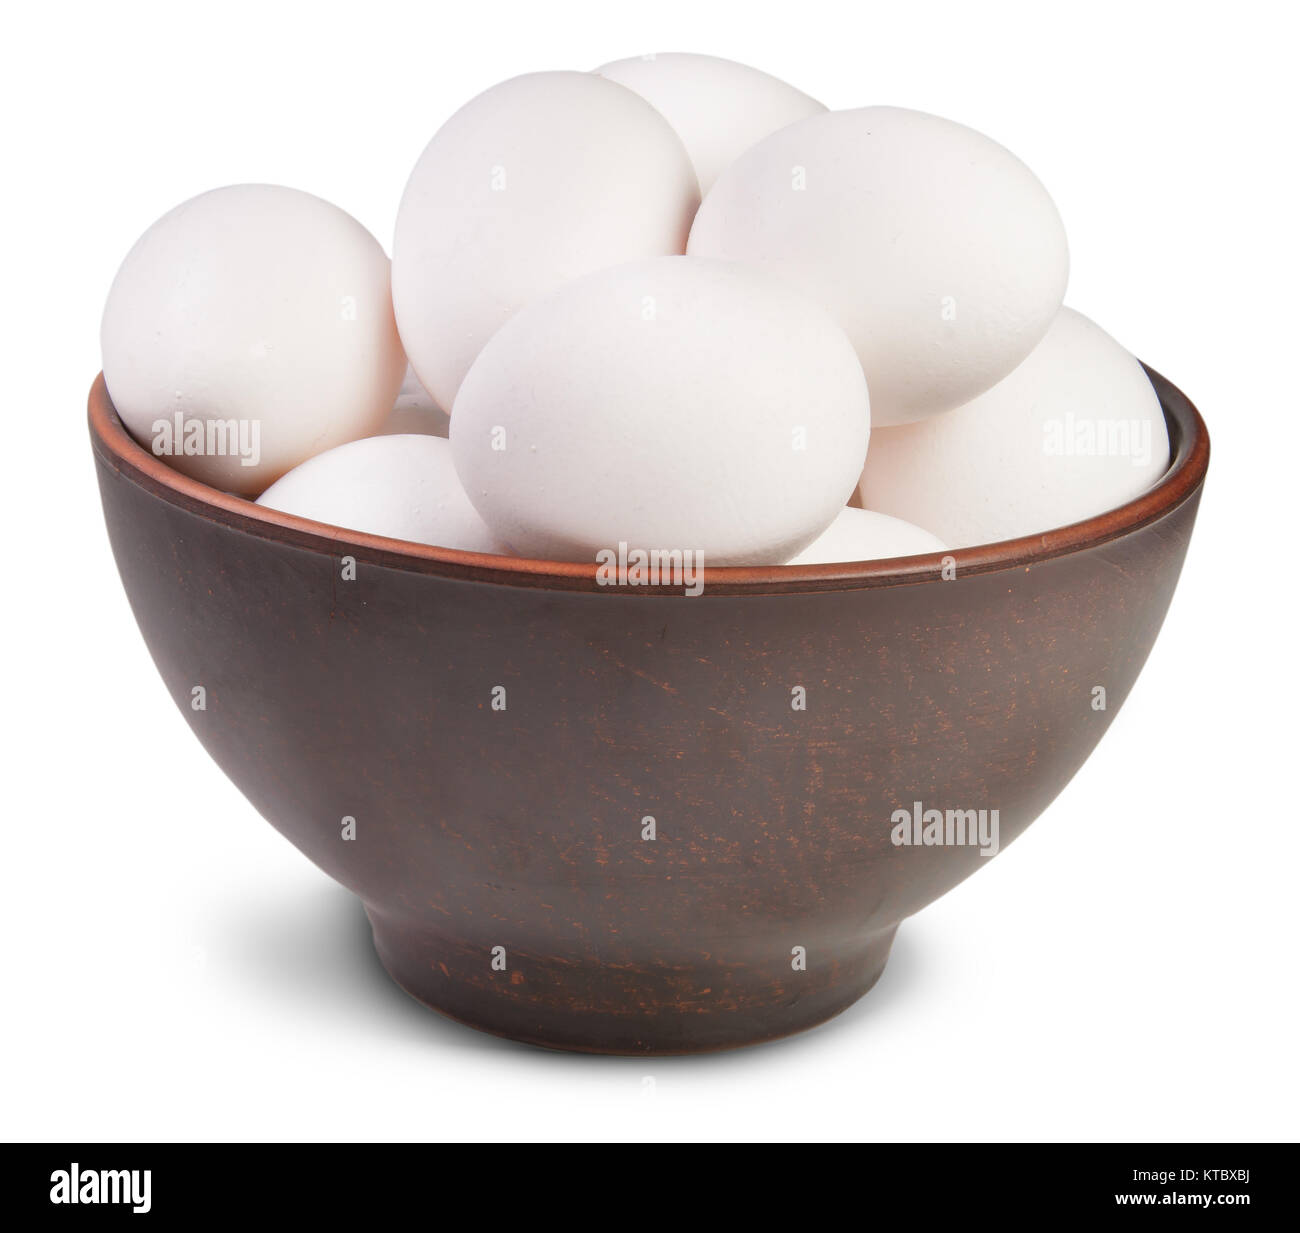 White Eggs Into Ceramic Bowl Stock Photo